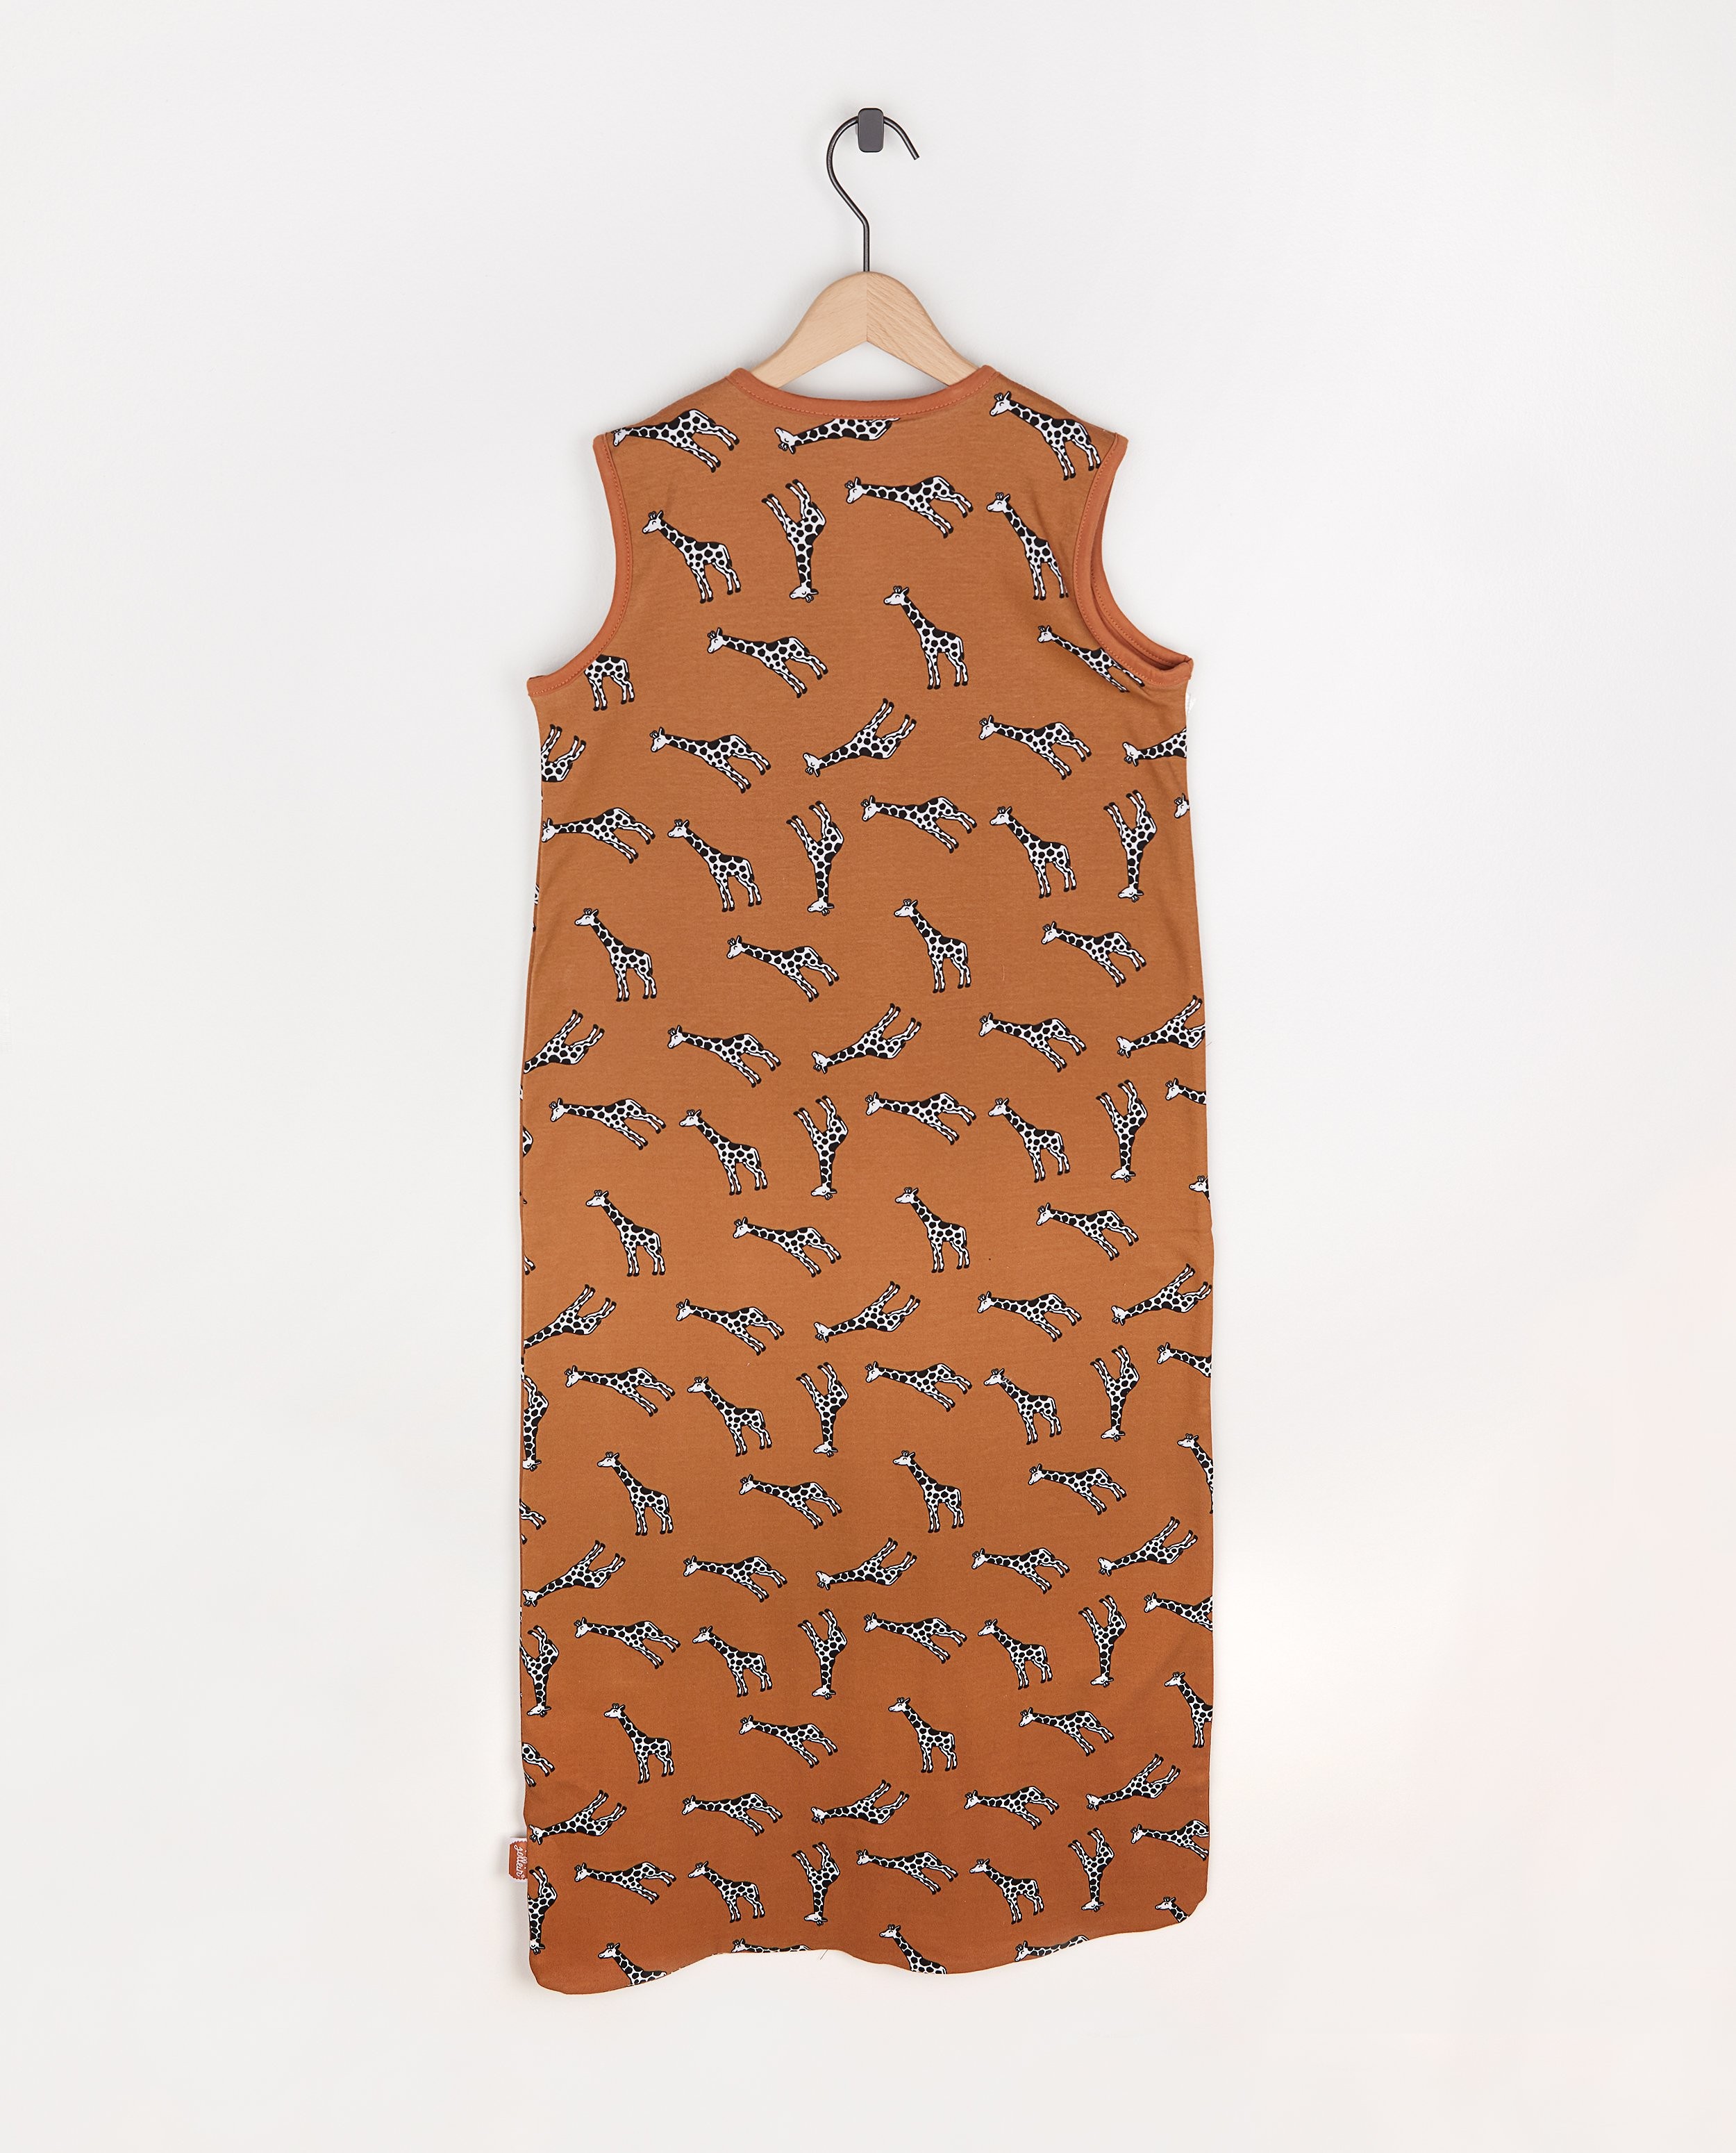 Accessoires pour bébés - Sac de couchage Girafe Jollein - 110 cm